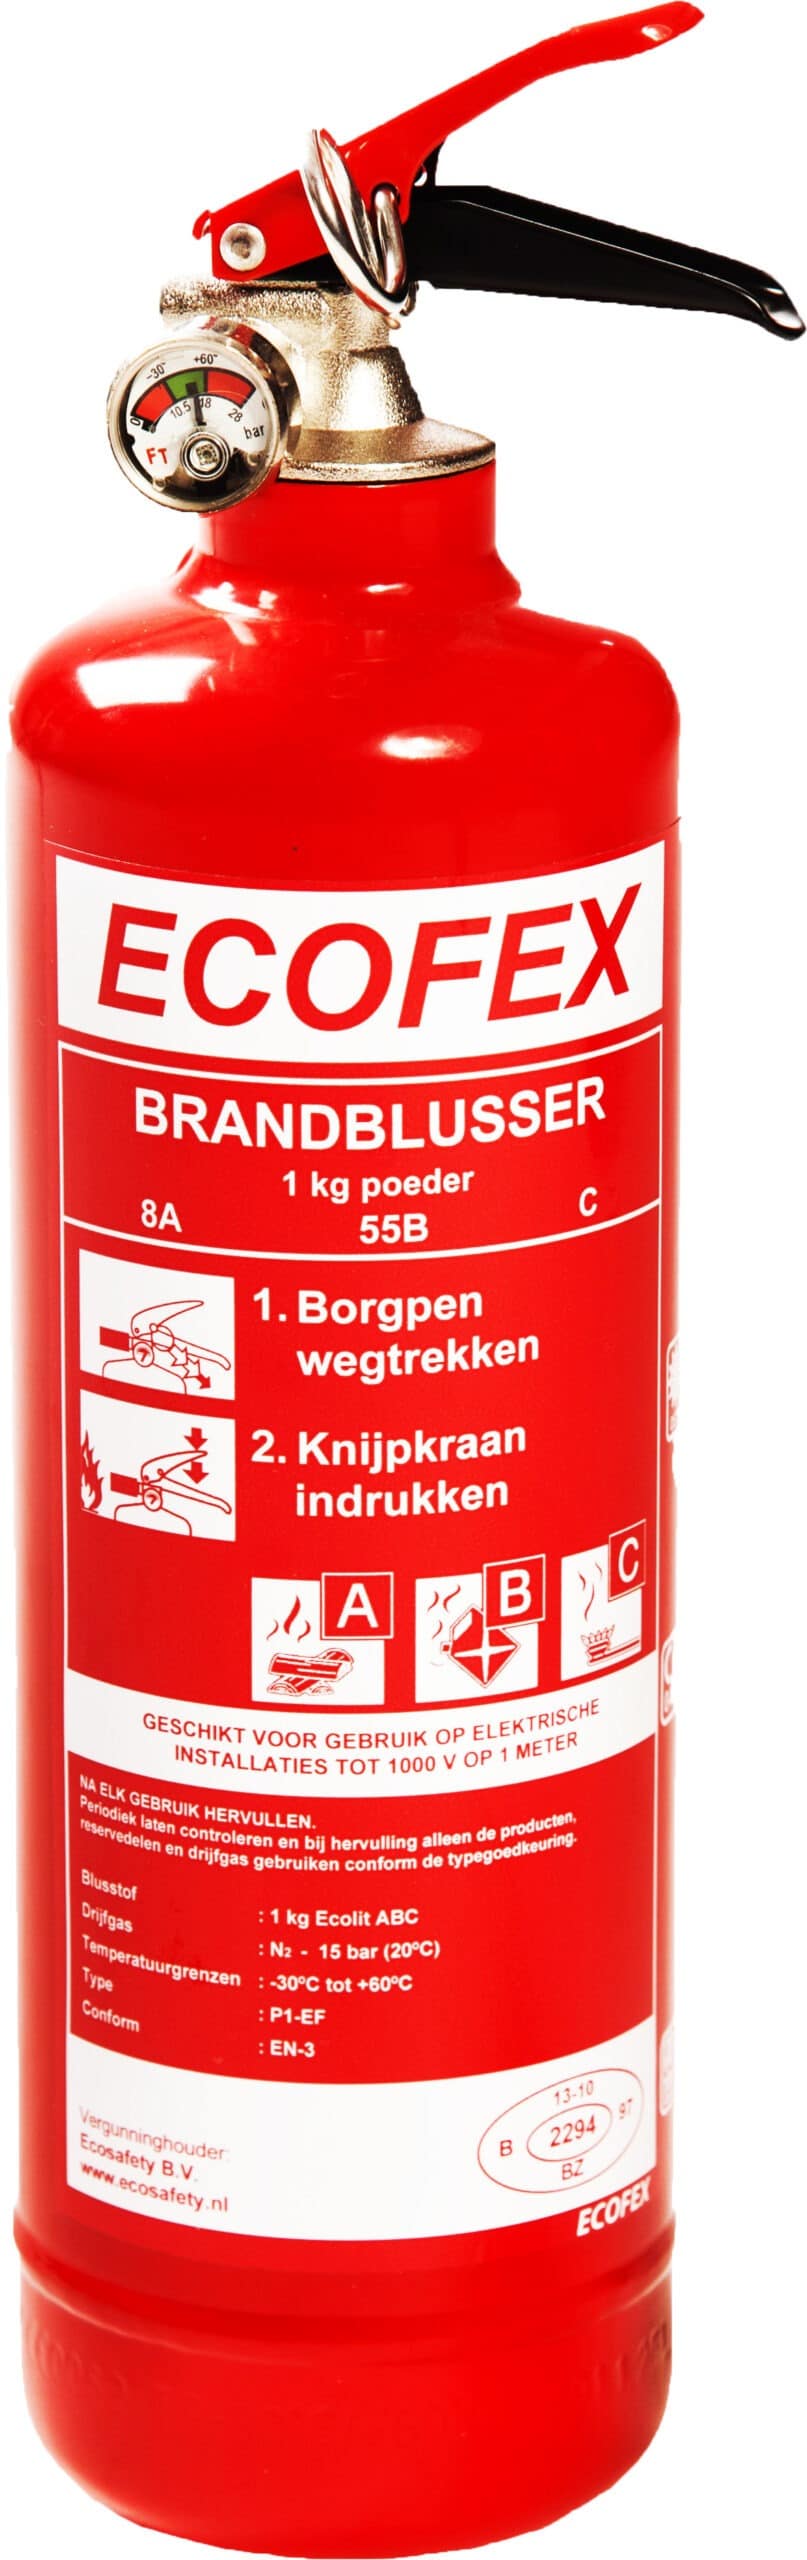 ECOFEX 1kg Poeder Brandblusser